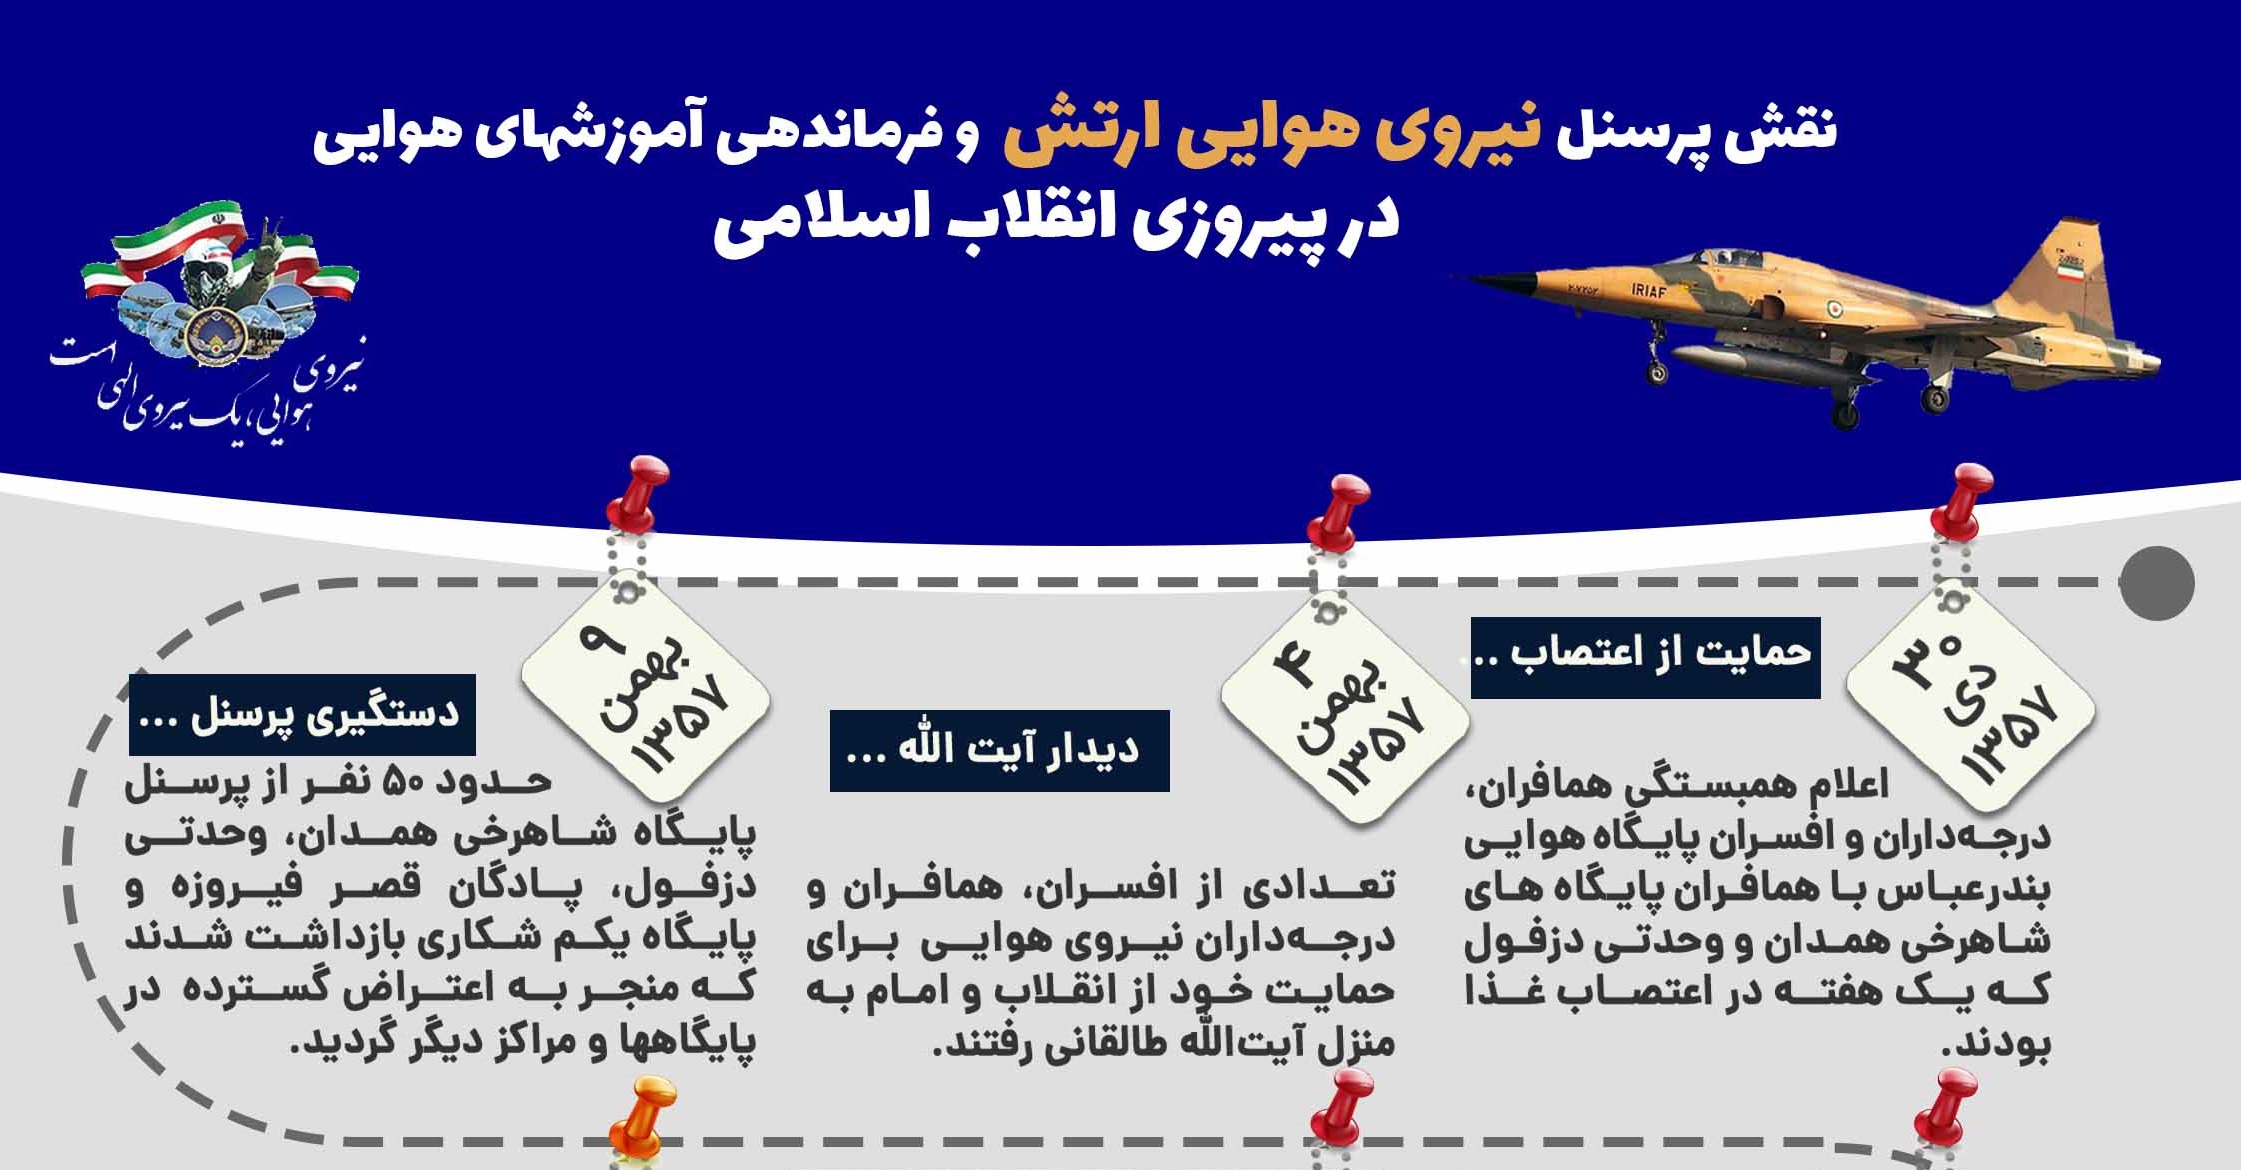 نقش نیروی هوایی در پیروزی انقلاب اسلامی